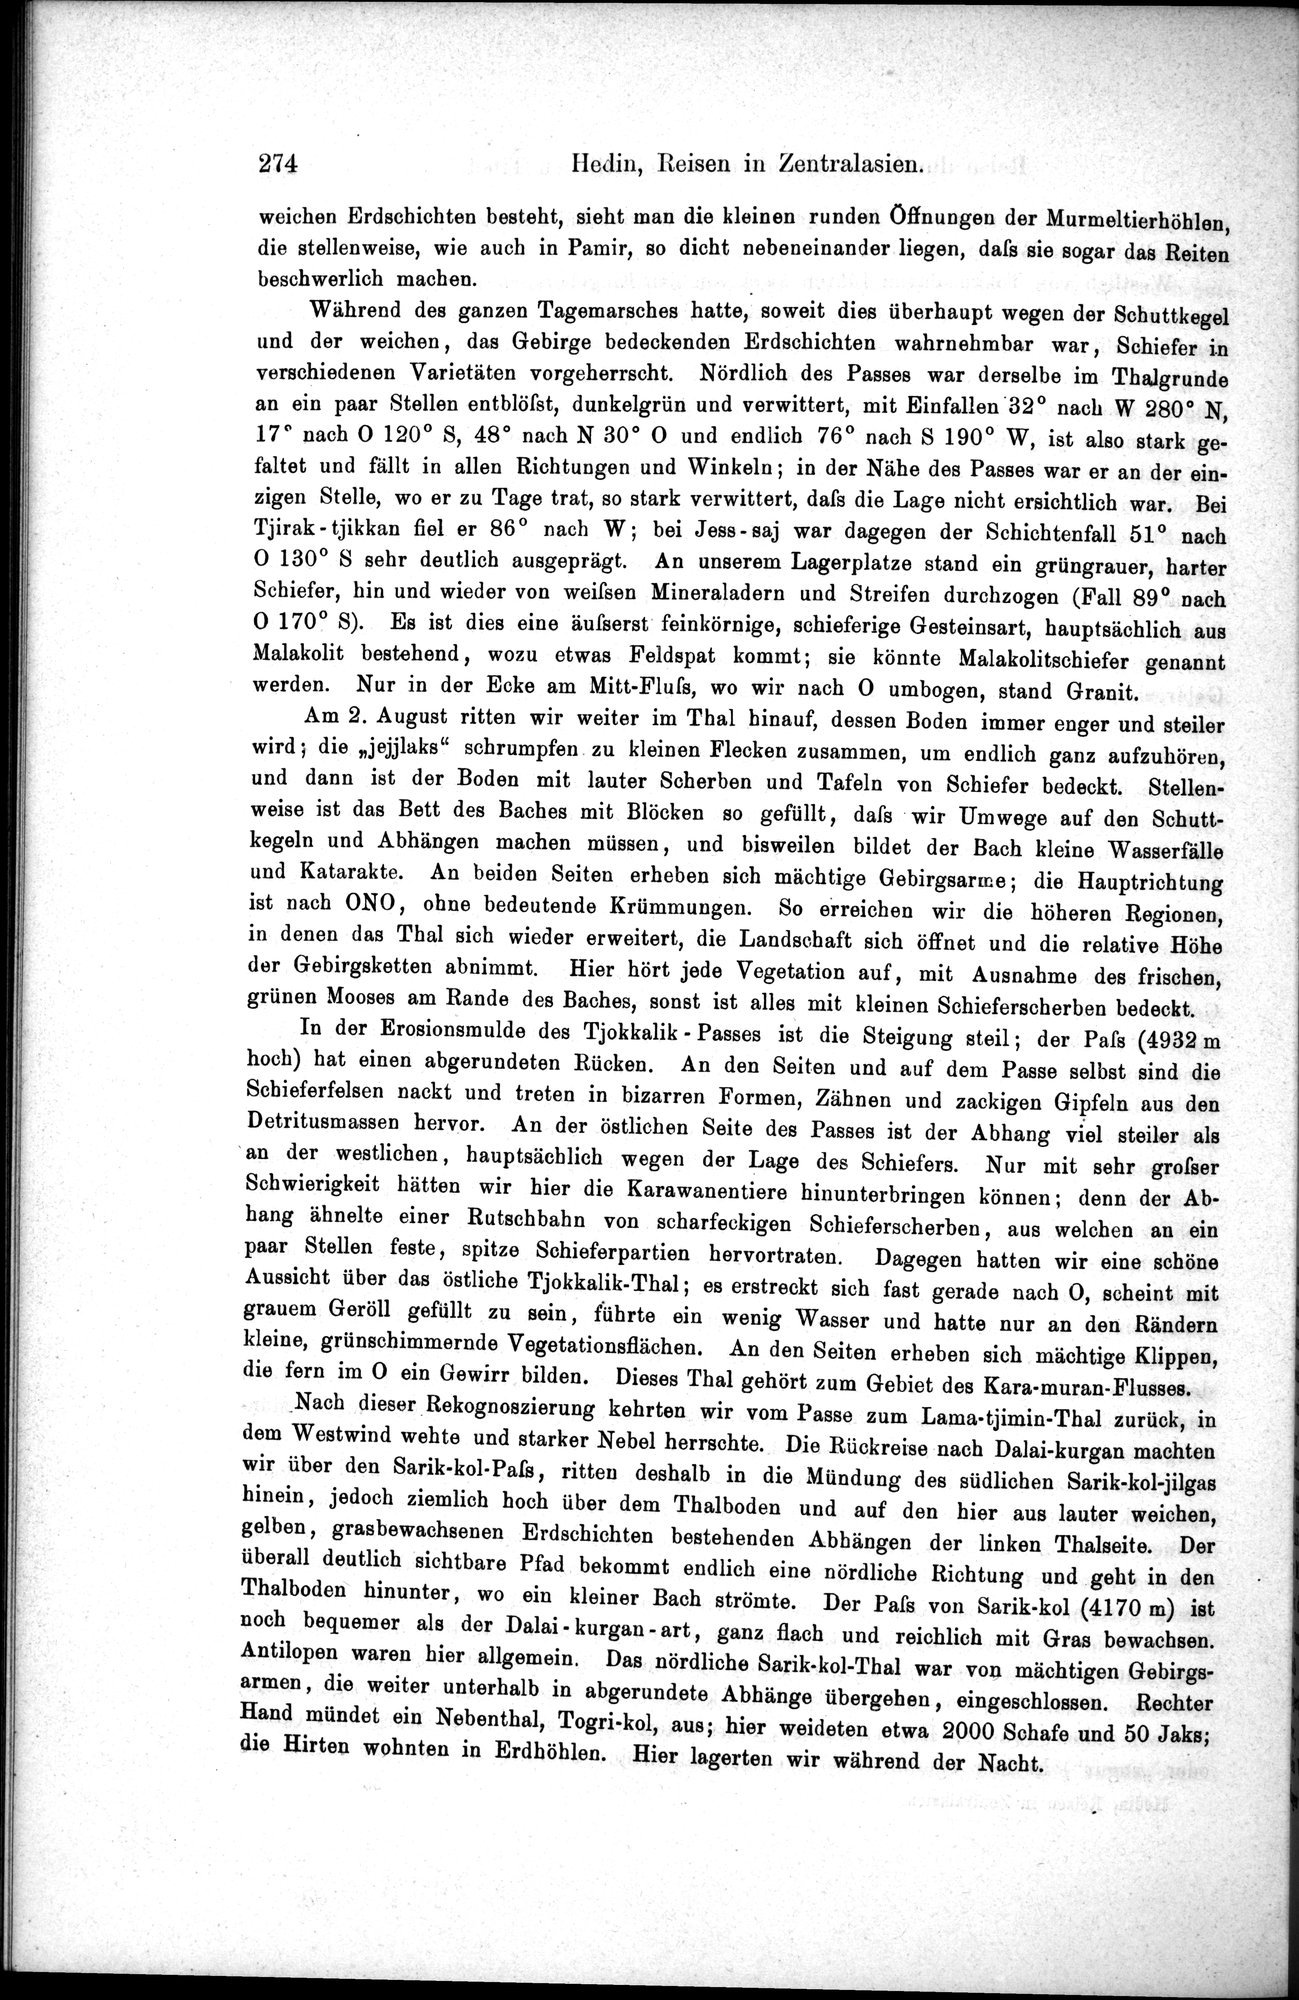 Die Geographische-Wissenschaftlichen Ergebnisse meiner Reisen in Zentralasien, 1894-1897 : vol.1 / Page 286 (Grayscale High Resolution Image)